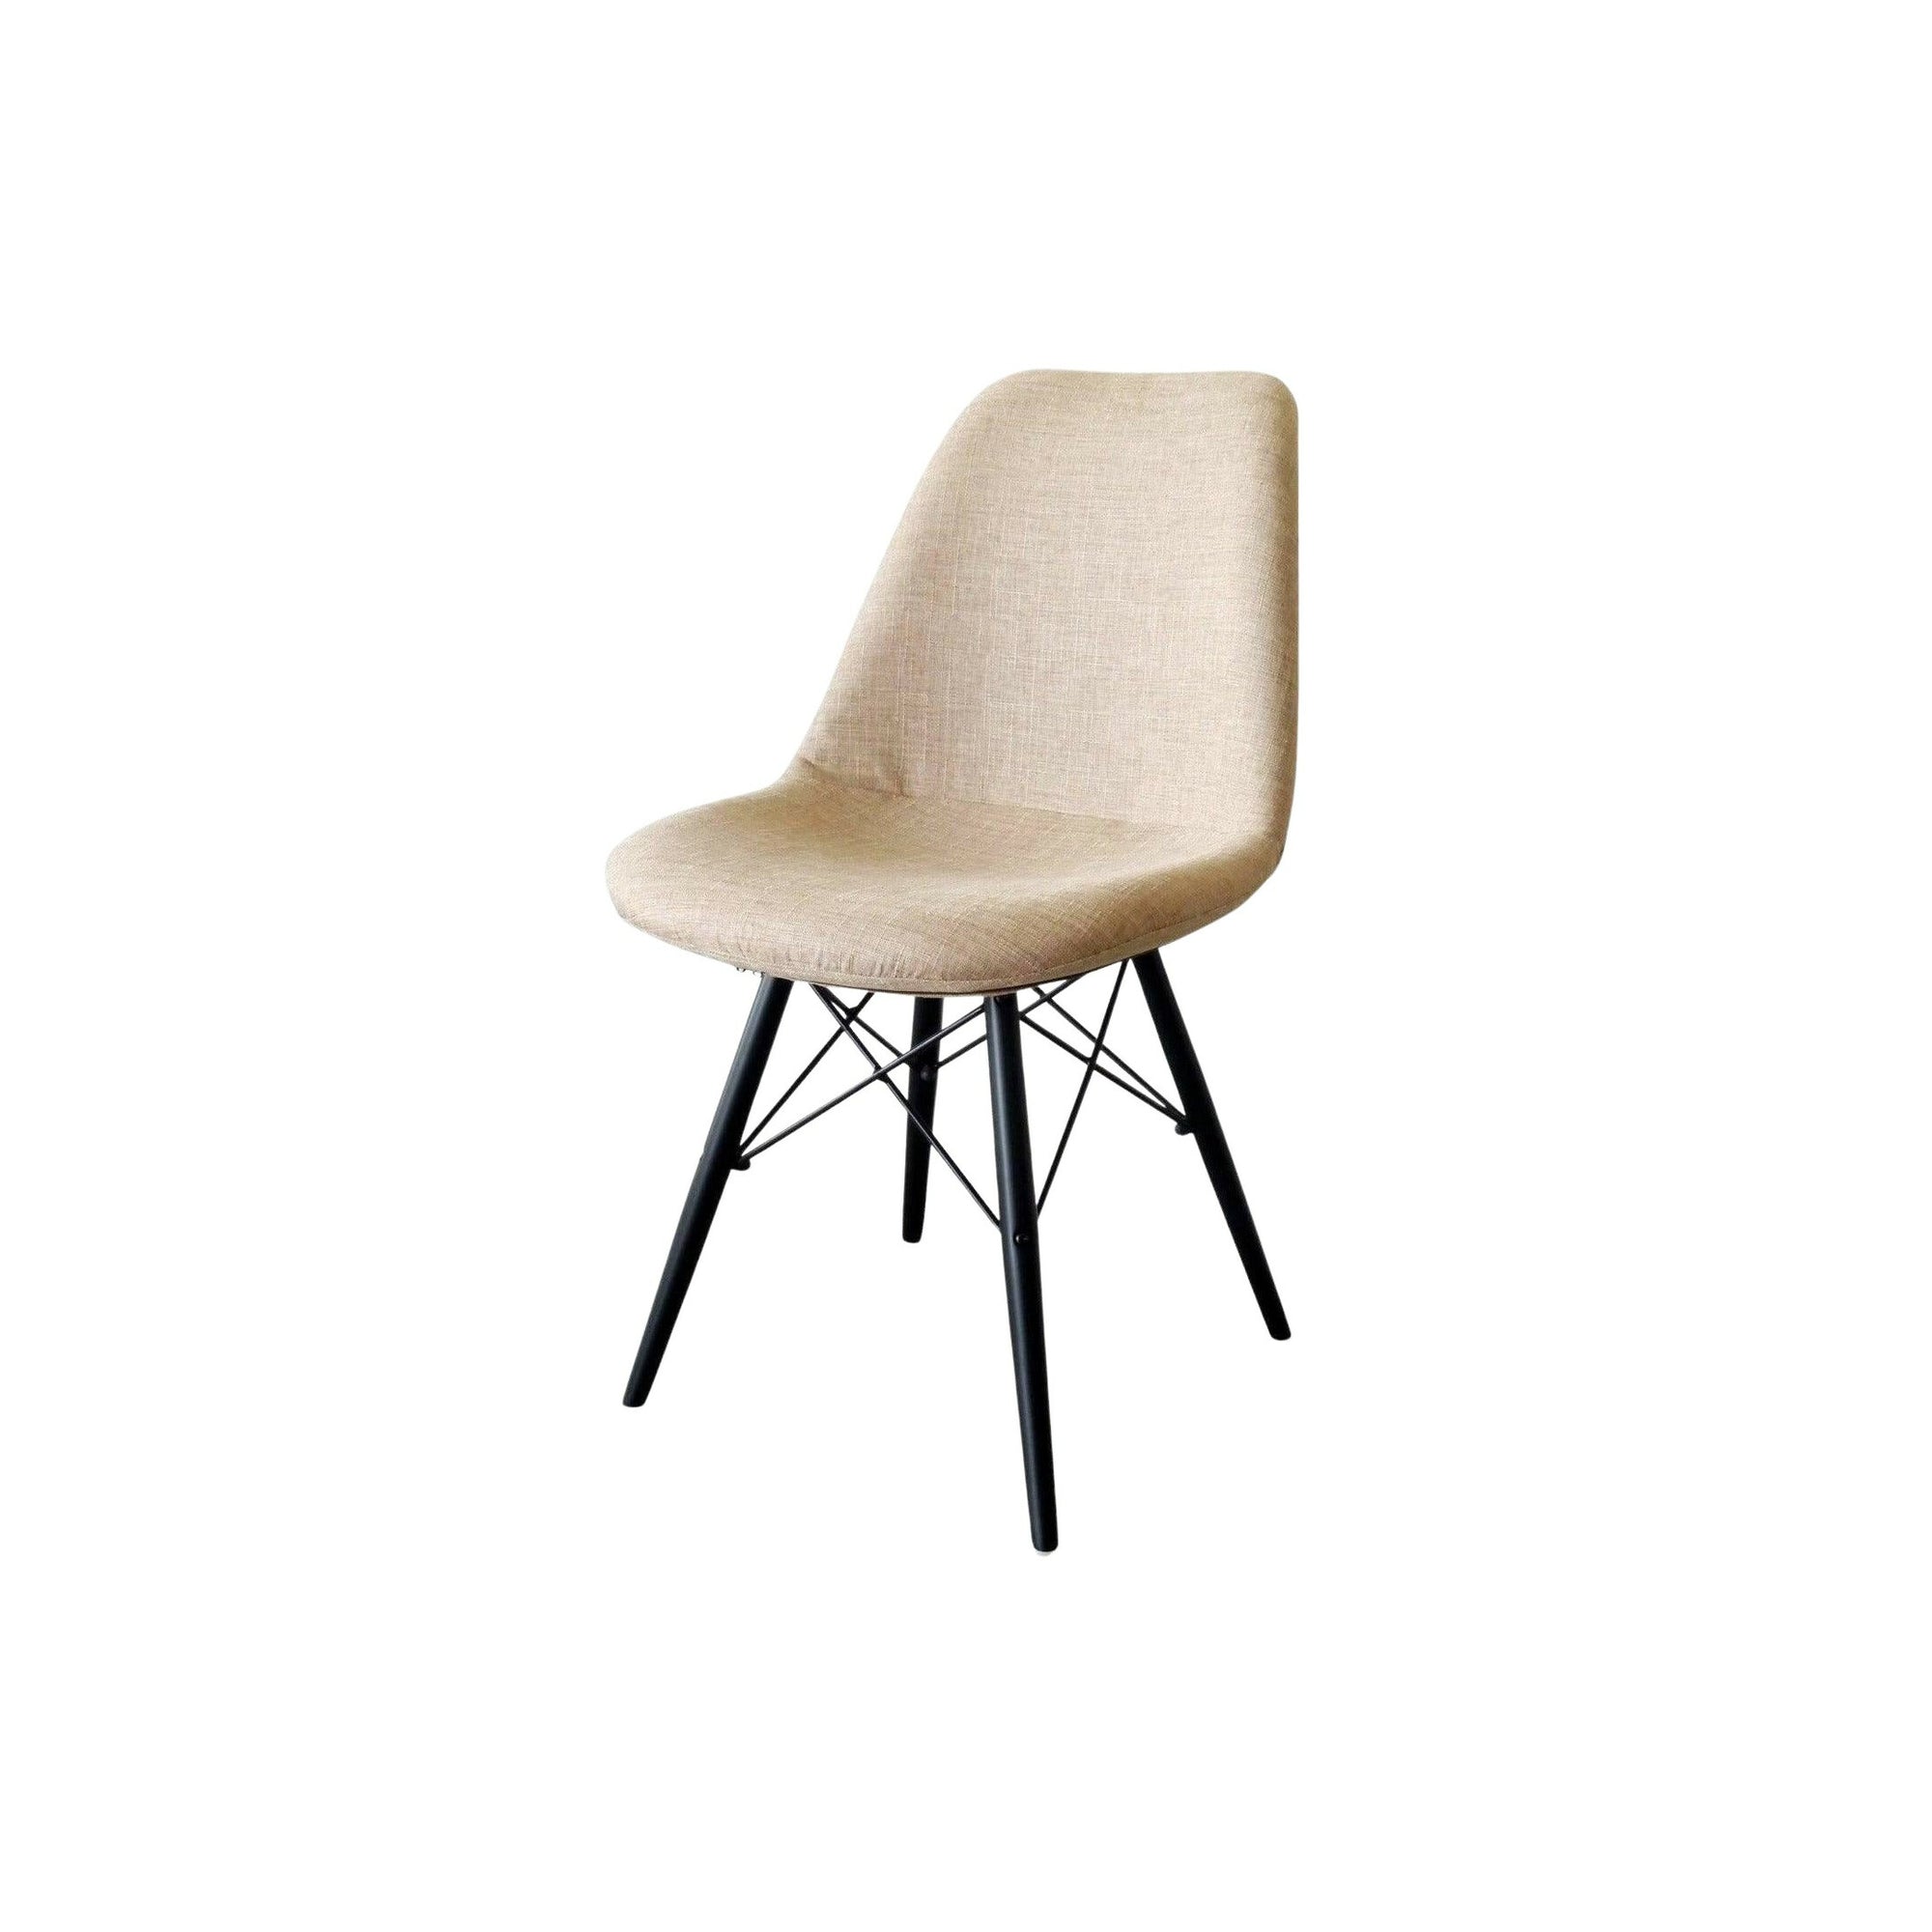 デザイナーズチェアDesign chair CORTEGART ガルトkaguaroo